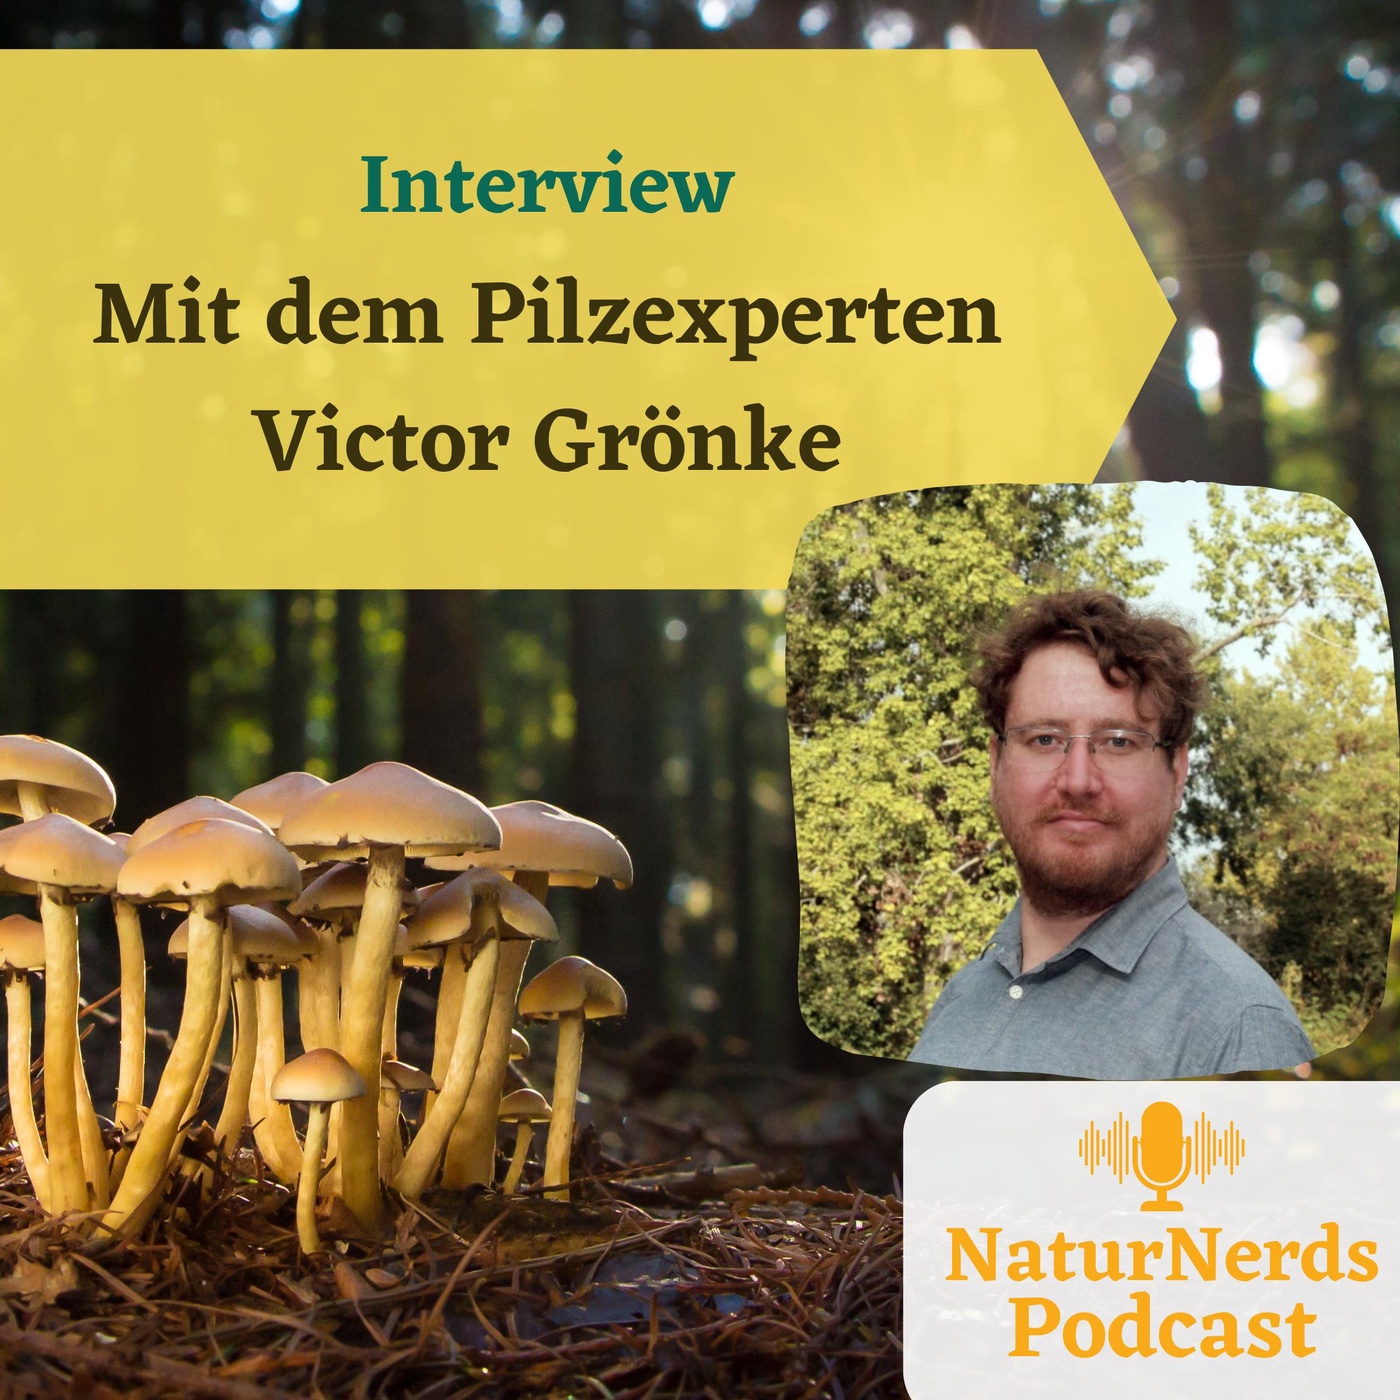 Spaziergang und Interview mit dem Pilzexperten Victor Grönke